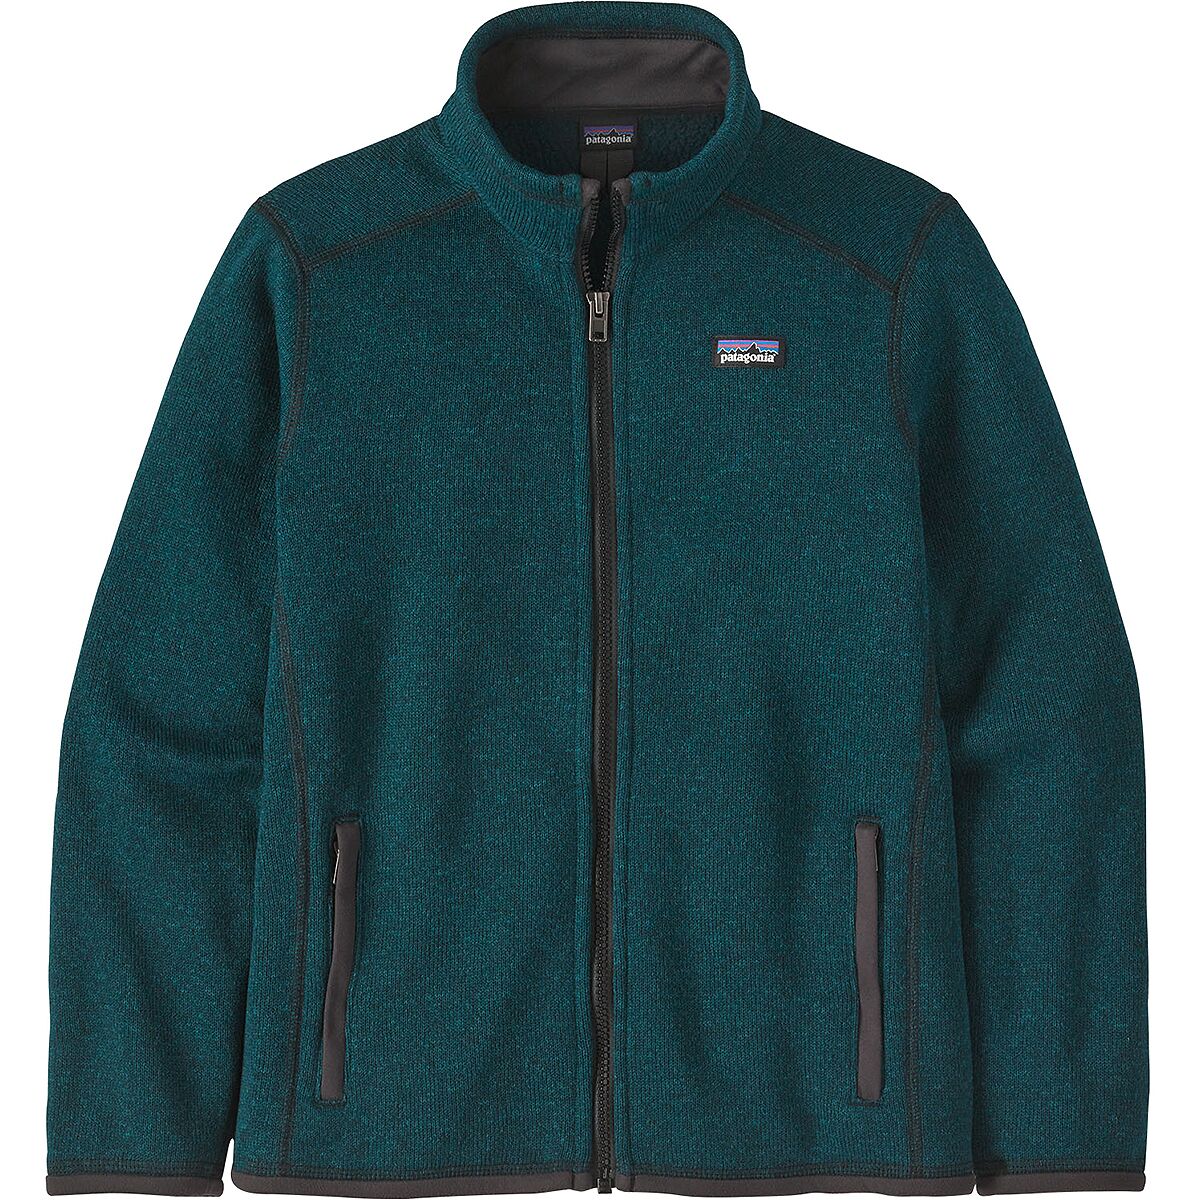 Better Sweater Fleece Jacket - Boys